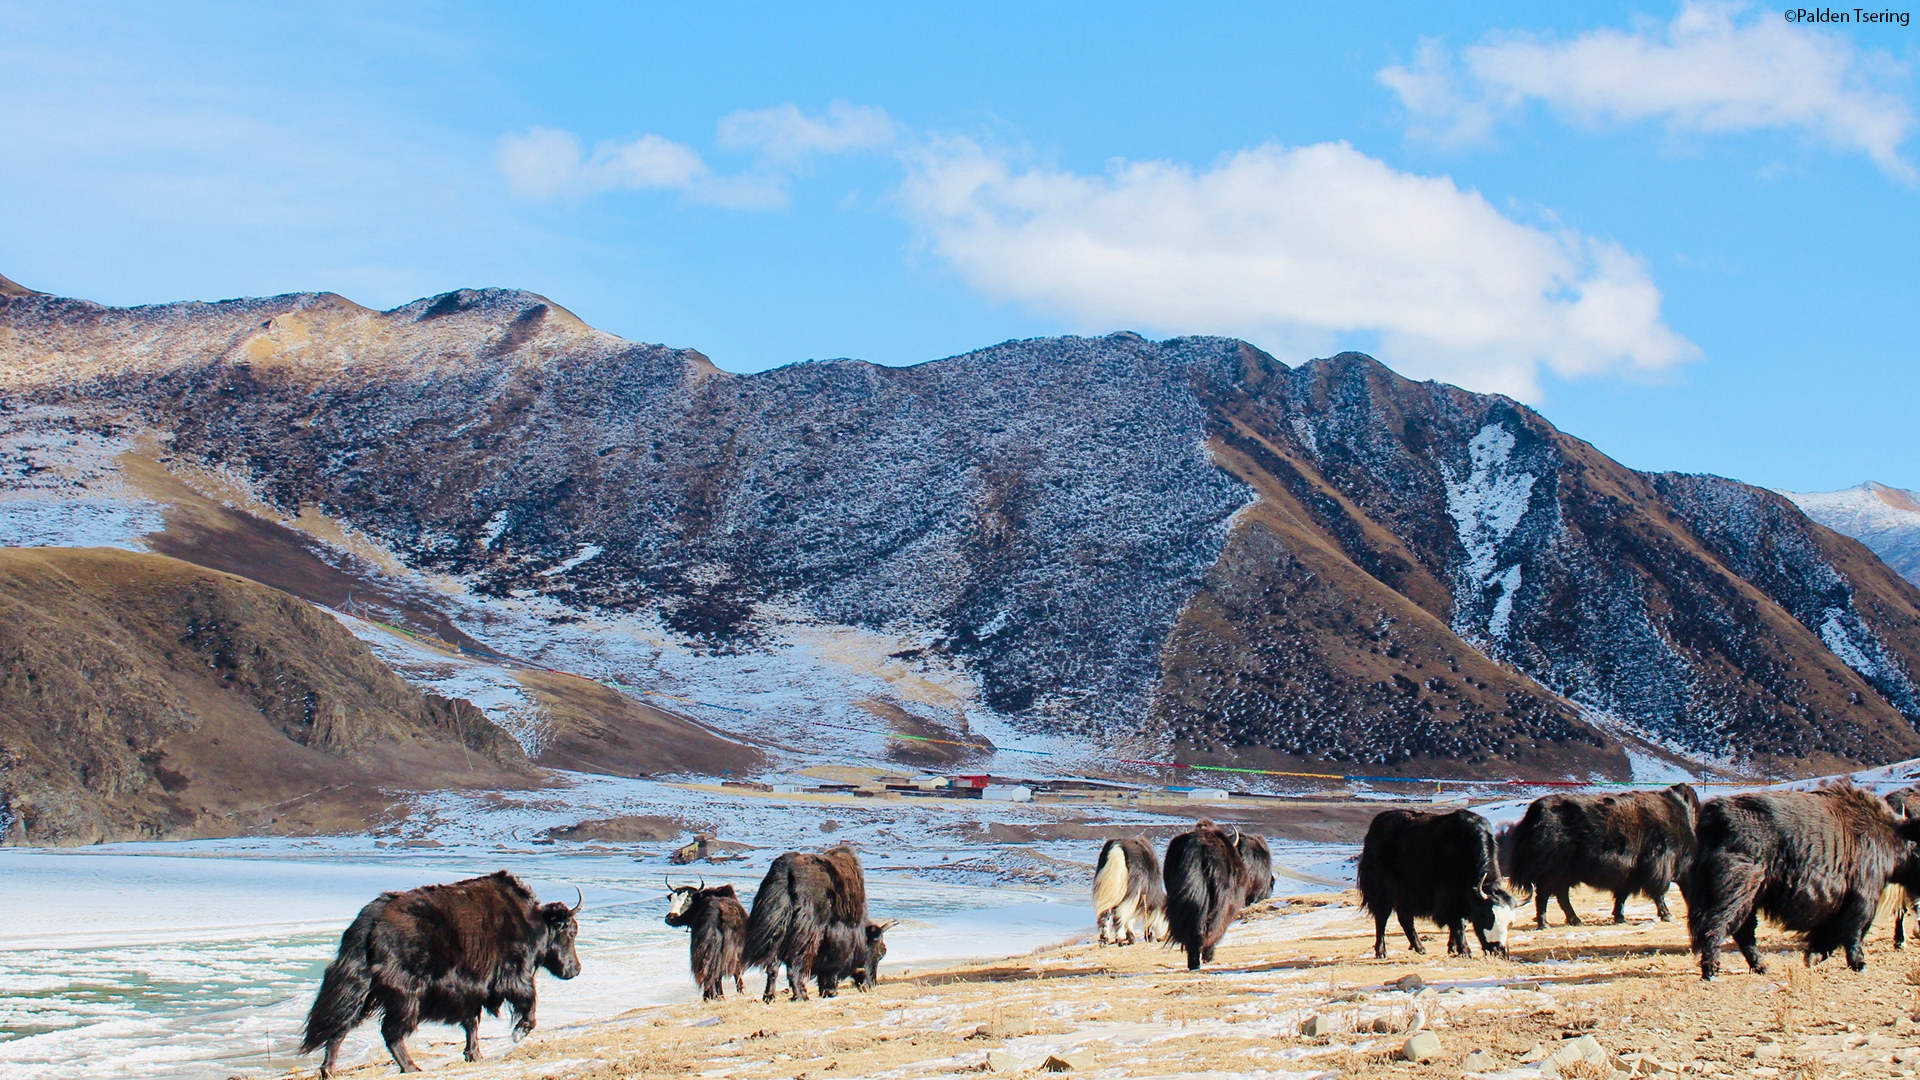 Yaks in Golok, Amdo Tibet by Palden Tsering